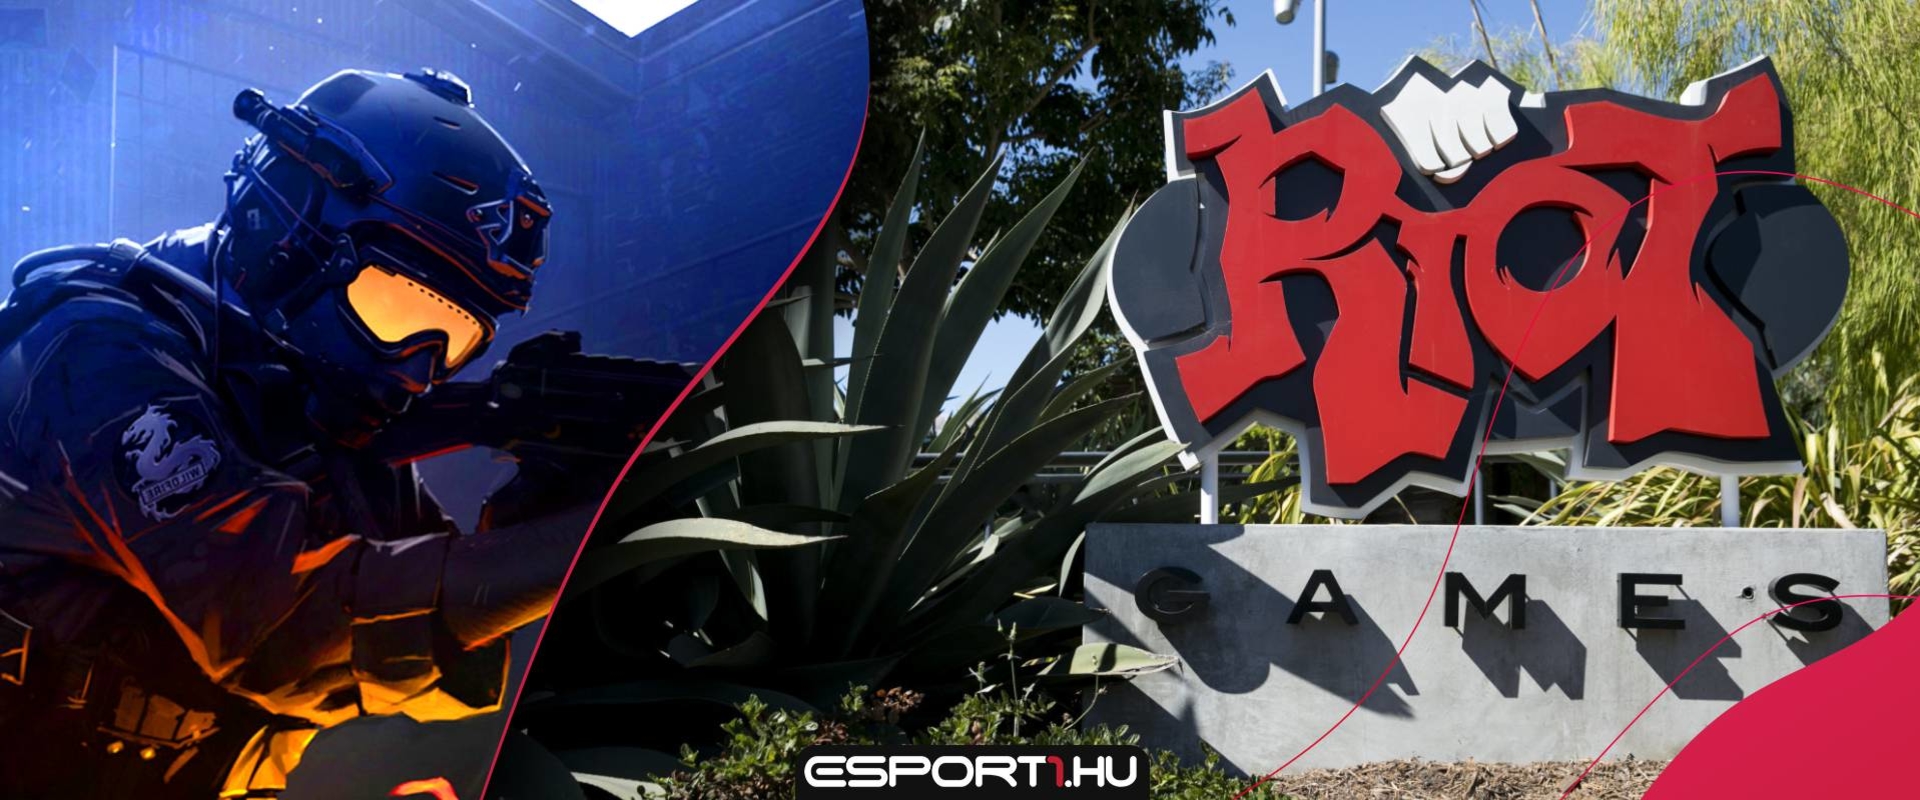 CS:GO, PUBG, Fortnite, Apex és R6S csapat tulajdonosát perli a Riot Games